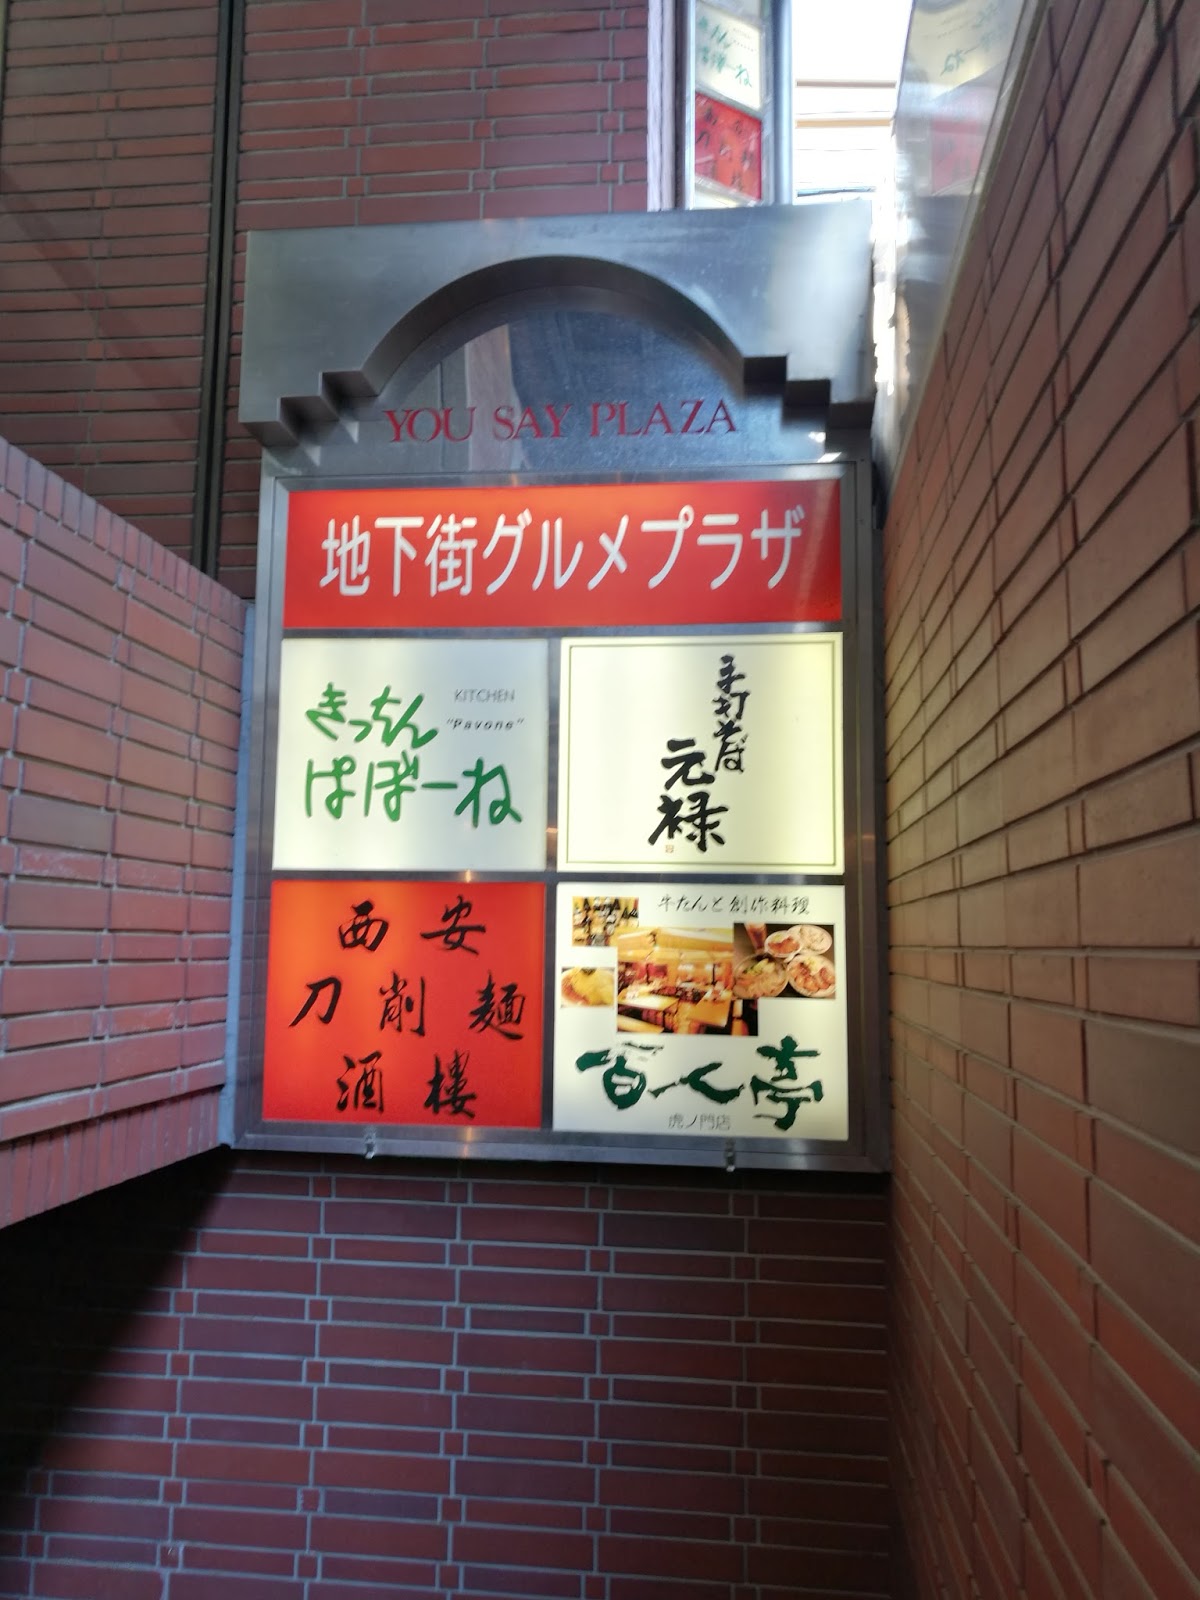 キャノンデールのｂ級食べ歩記 本日西新橋から移転オープンした 西安刀削麺酒楼 本店 で早速ランチ 麻辣刀削麺にニラ玉ご飯セットを付けて